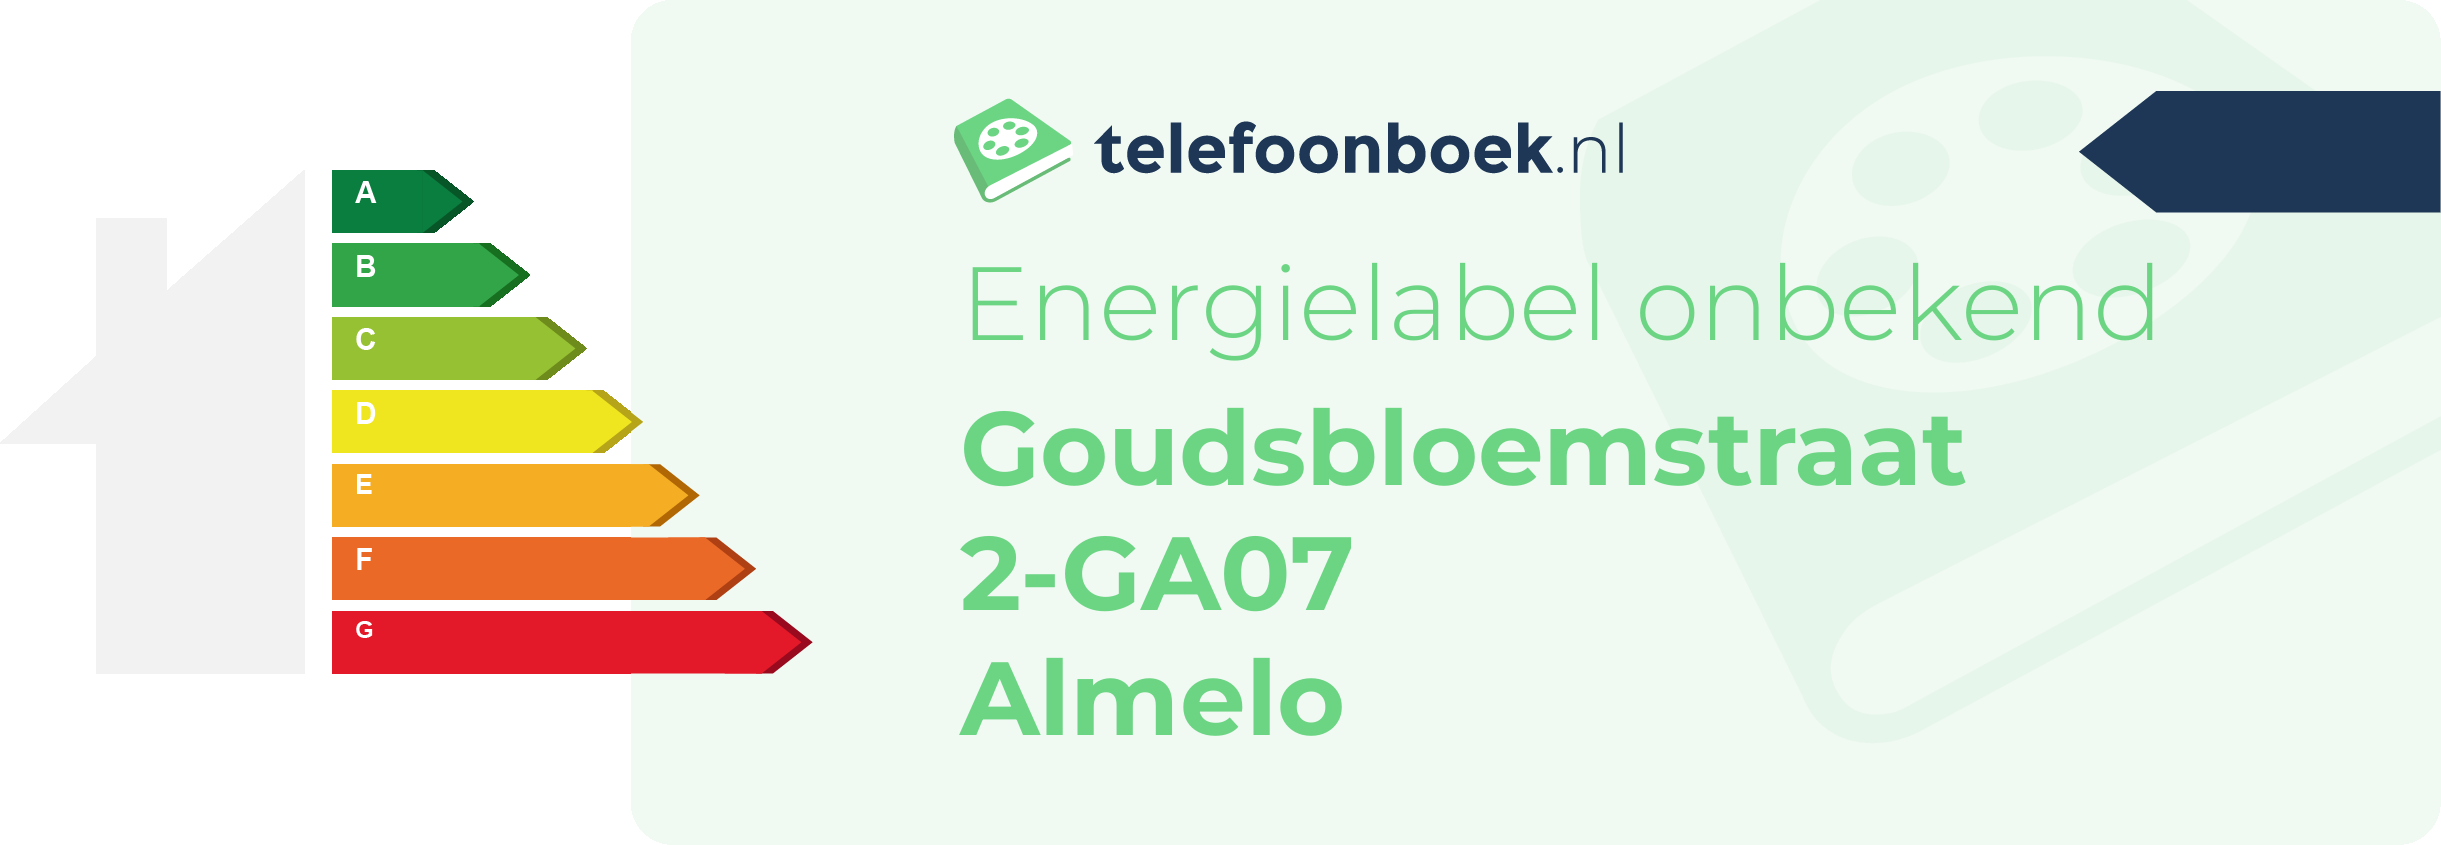 Energielabel Goudsbloemstraat 2-GA07 Almelo